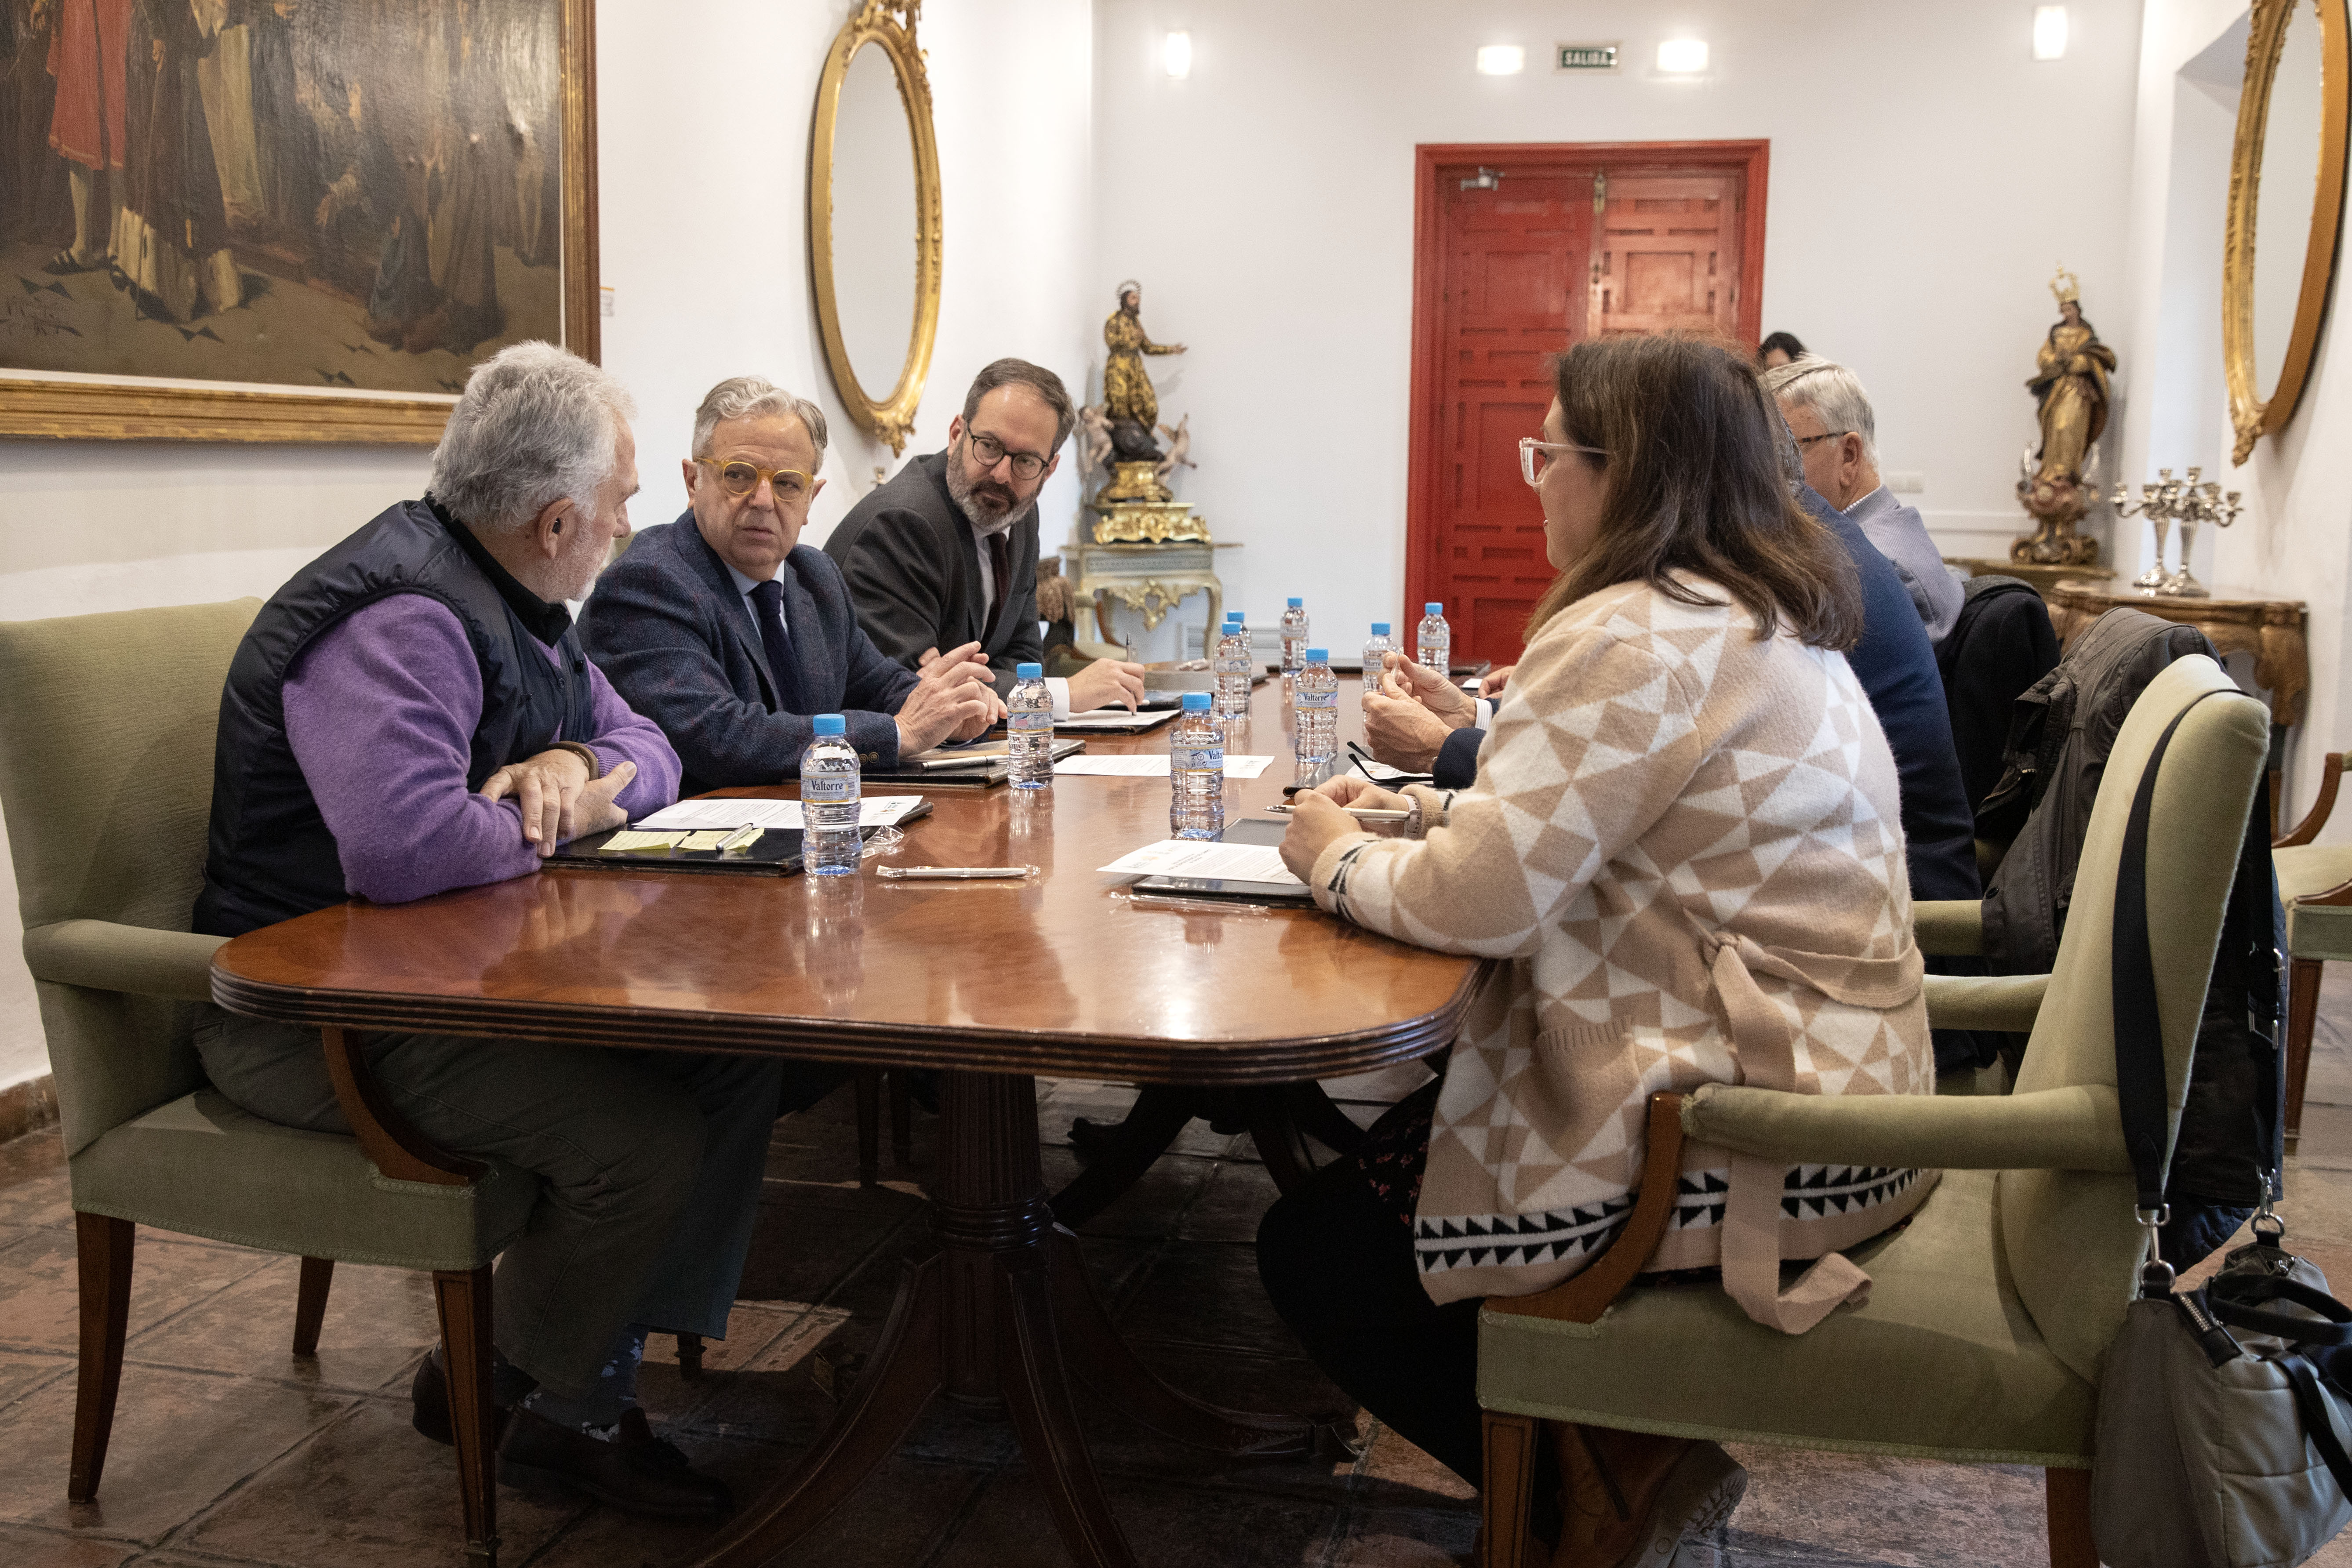 El presidente de la Diputación de Córdoba muestra apoyo a agricultores y ganaderos ante difícil situación.